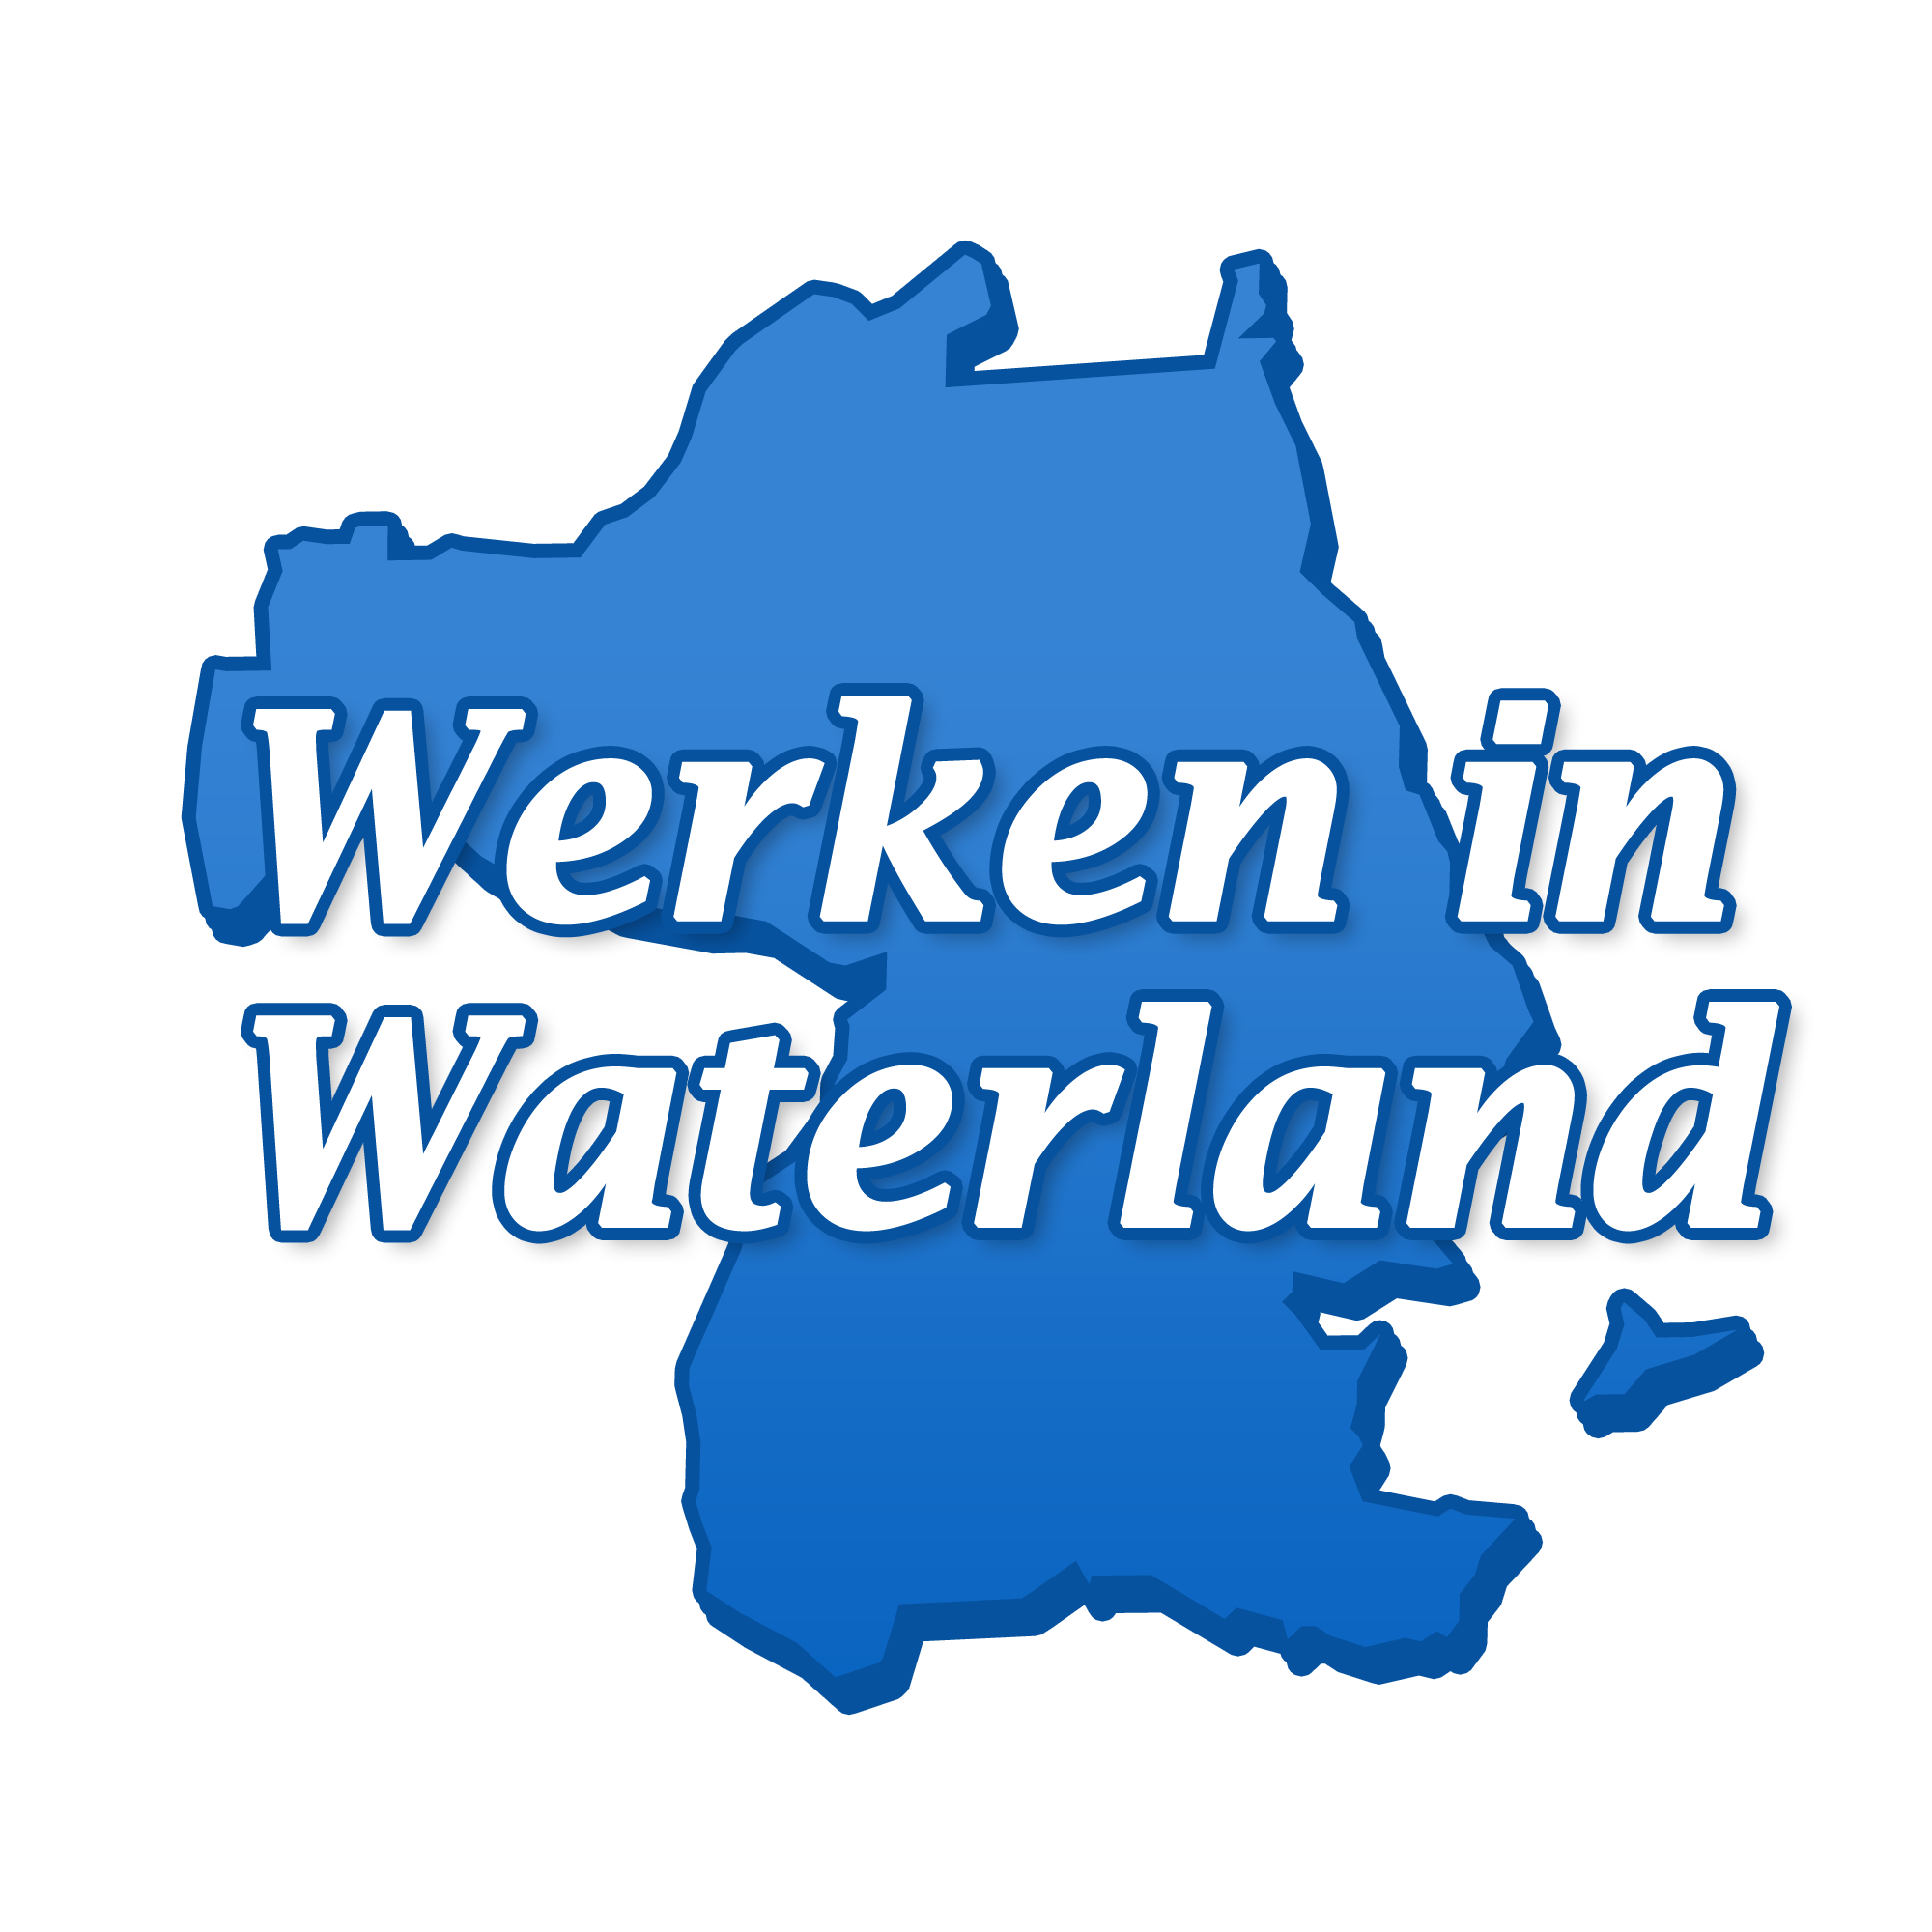 Volg ons voor vacatures in de regio Waterland. Werken in Waterland deelt gratis vacatures op social media en op de website http://t.co/tbsEiuRl6H.